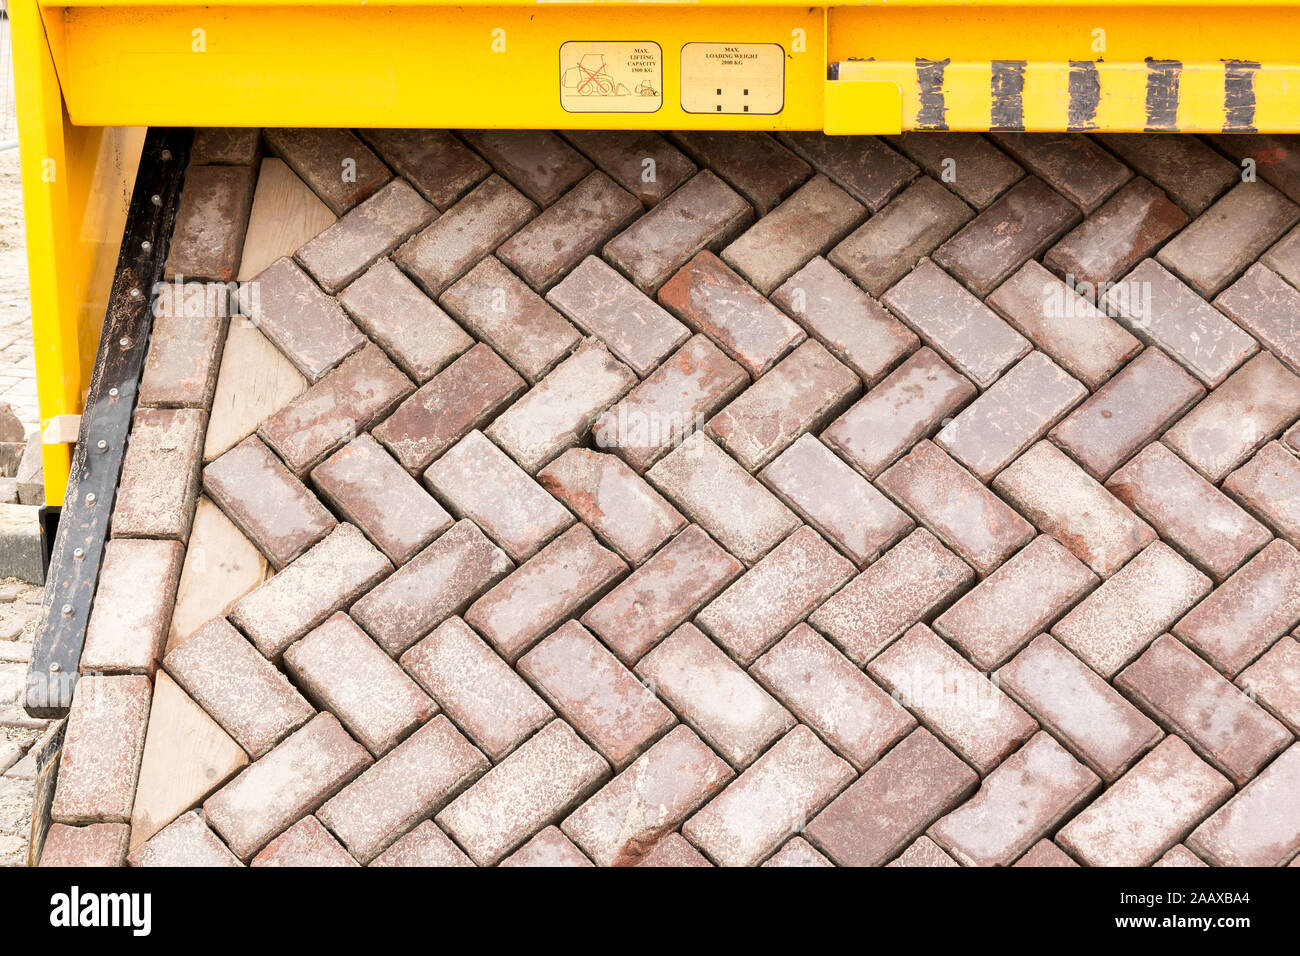 Route de la brique faisant la machine pose un tapis de briques en formation pour créer de nouveaux ouvrant sur route ou une rue, Pays-Bas Banque D'Images